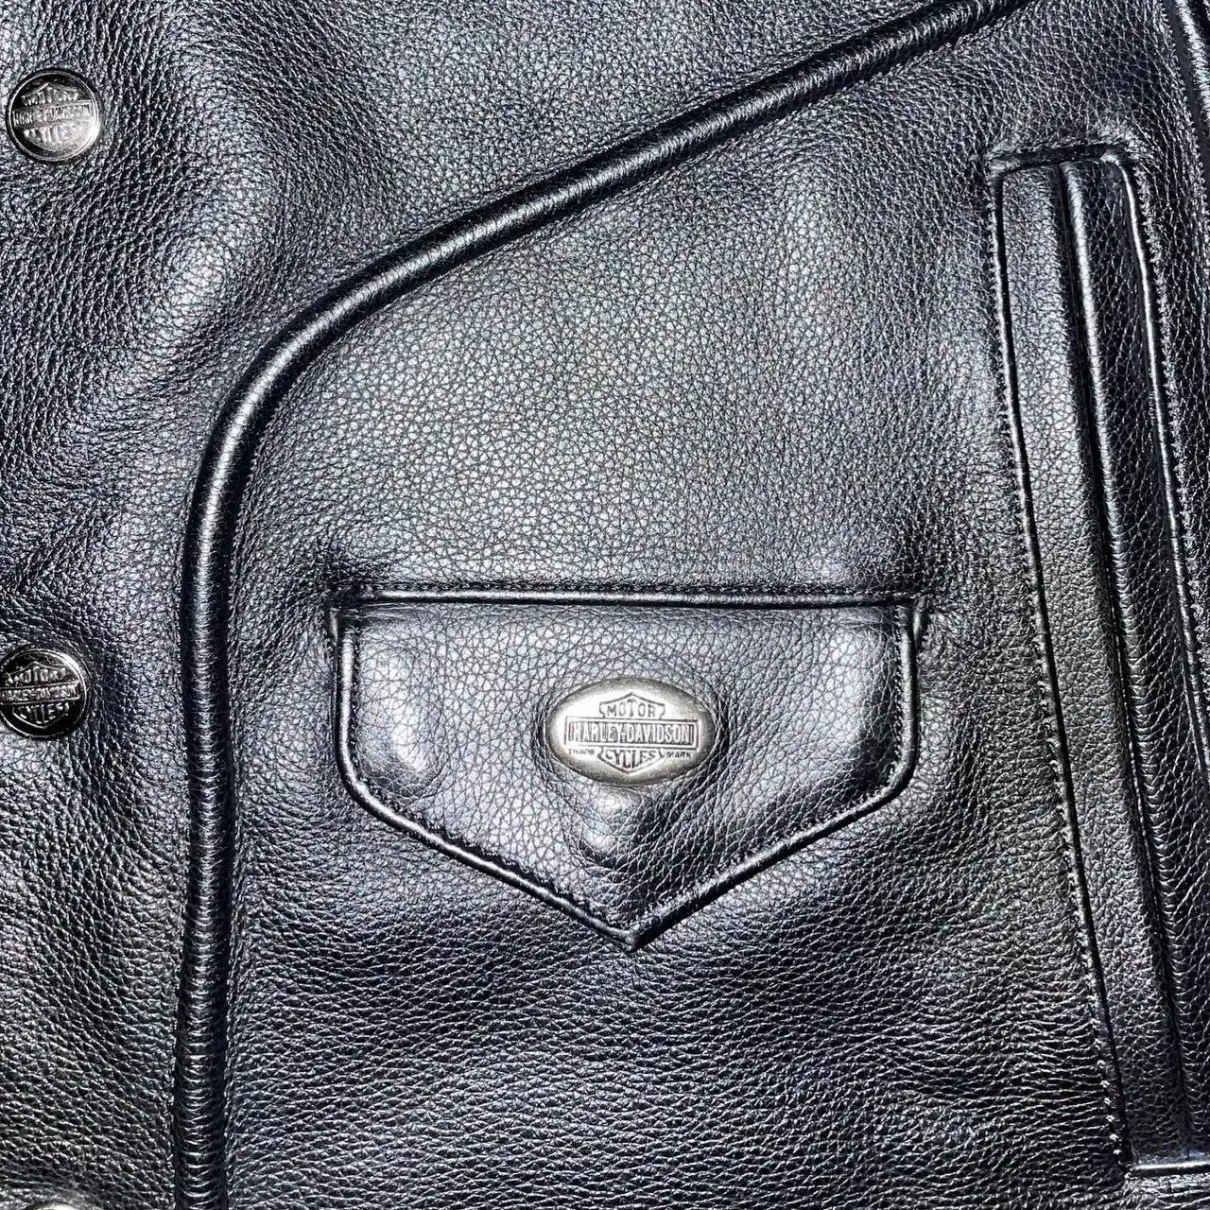 Buy HARLEY DAVIDSON Leather vest online